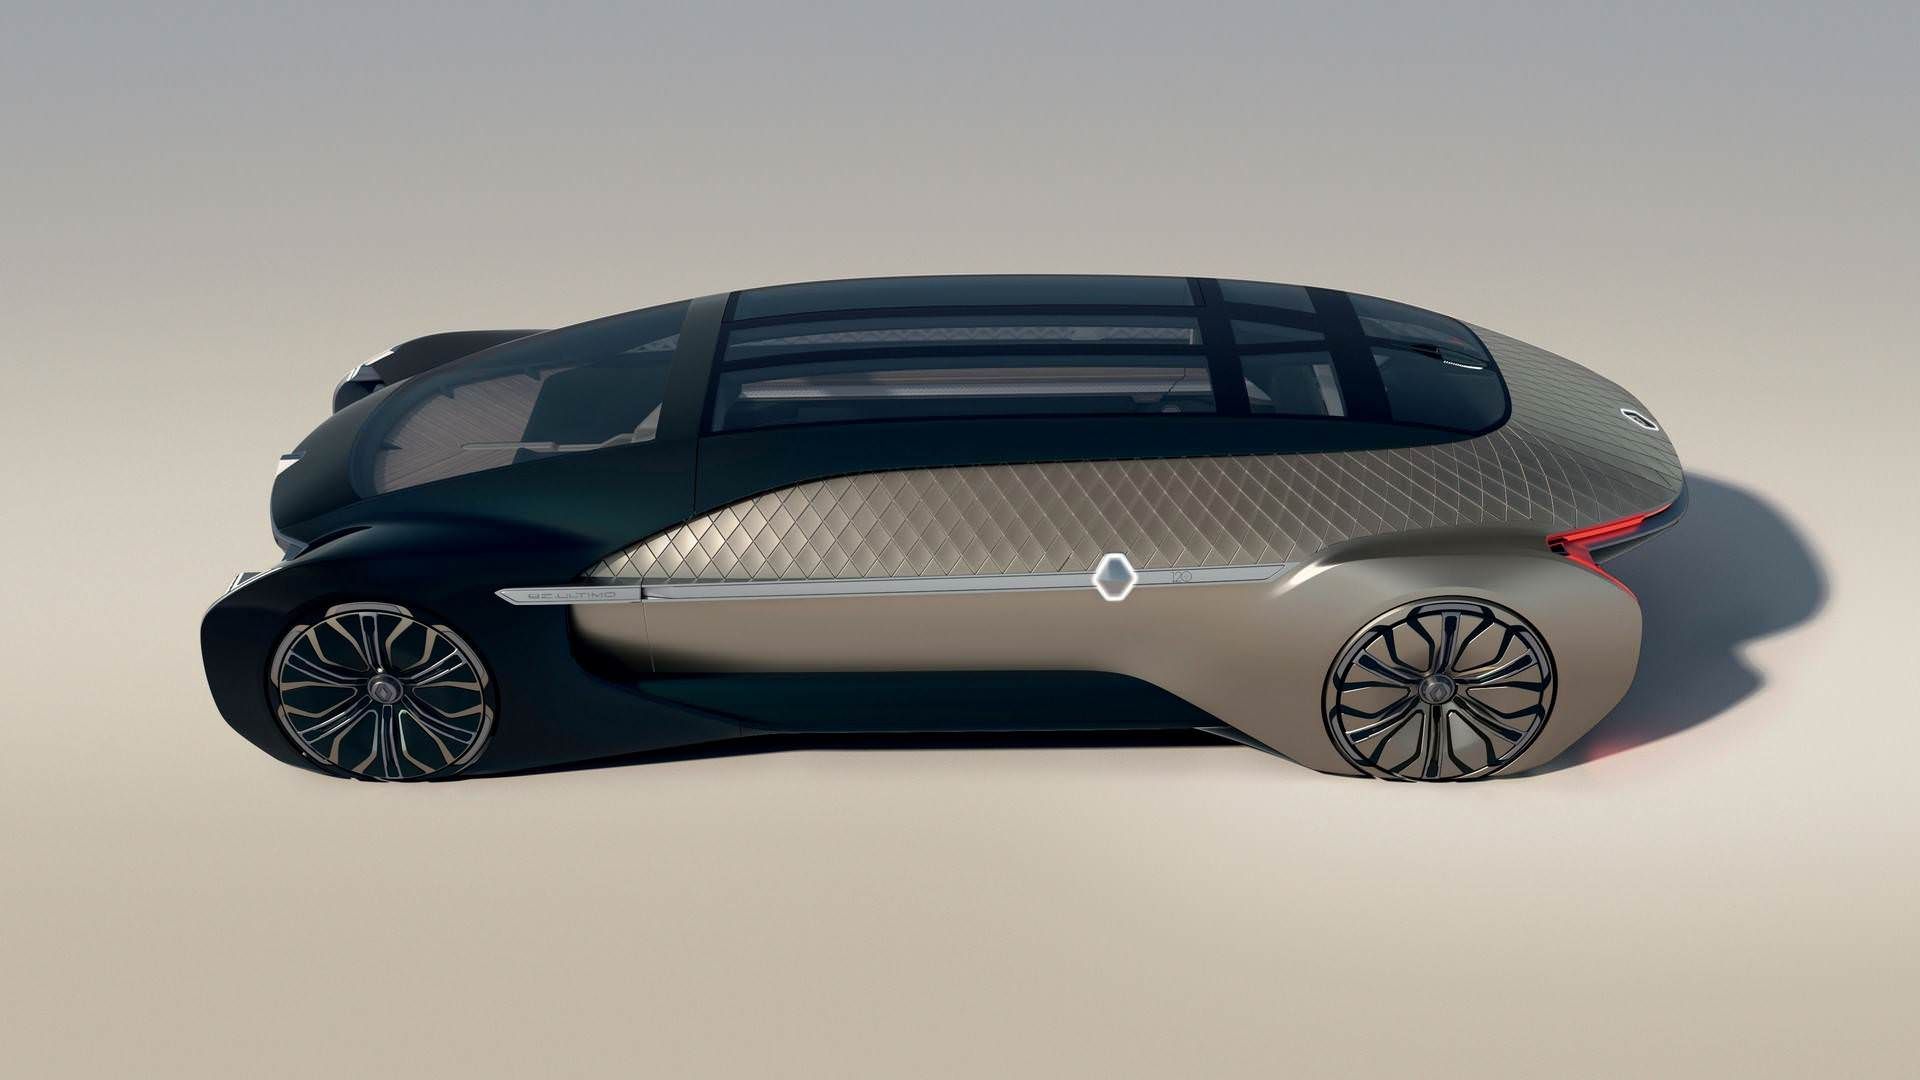 Renault EZ-Ultimo Autonomous Concept / خودروی خودران برقی مفهومی رنو EZ-Ultimo